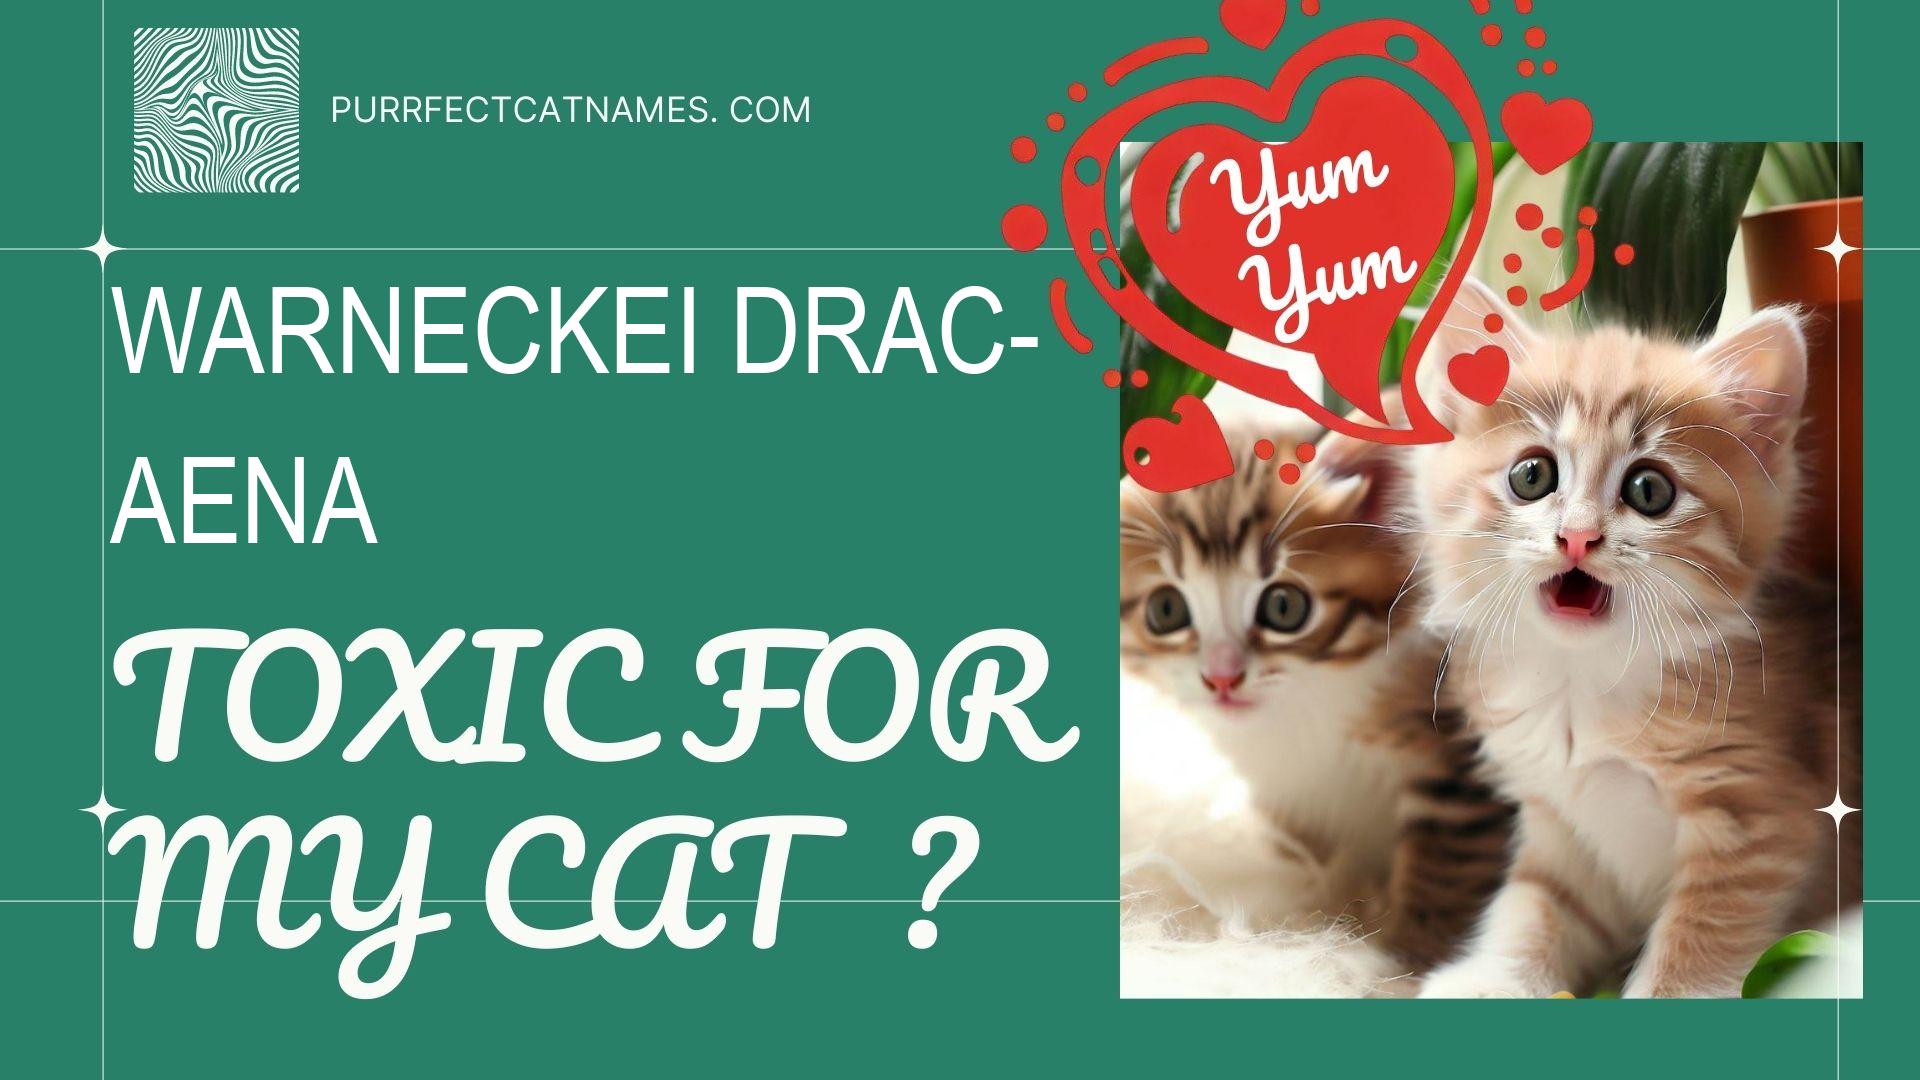 IsWarneckei Dracaena plant toxic for your cat